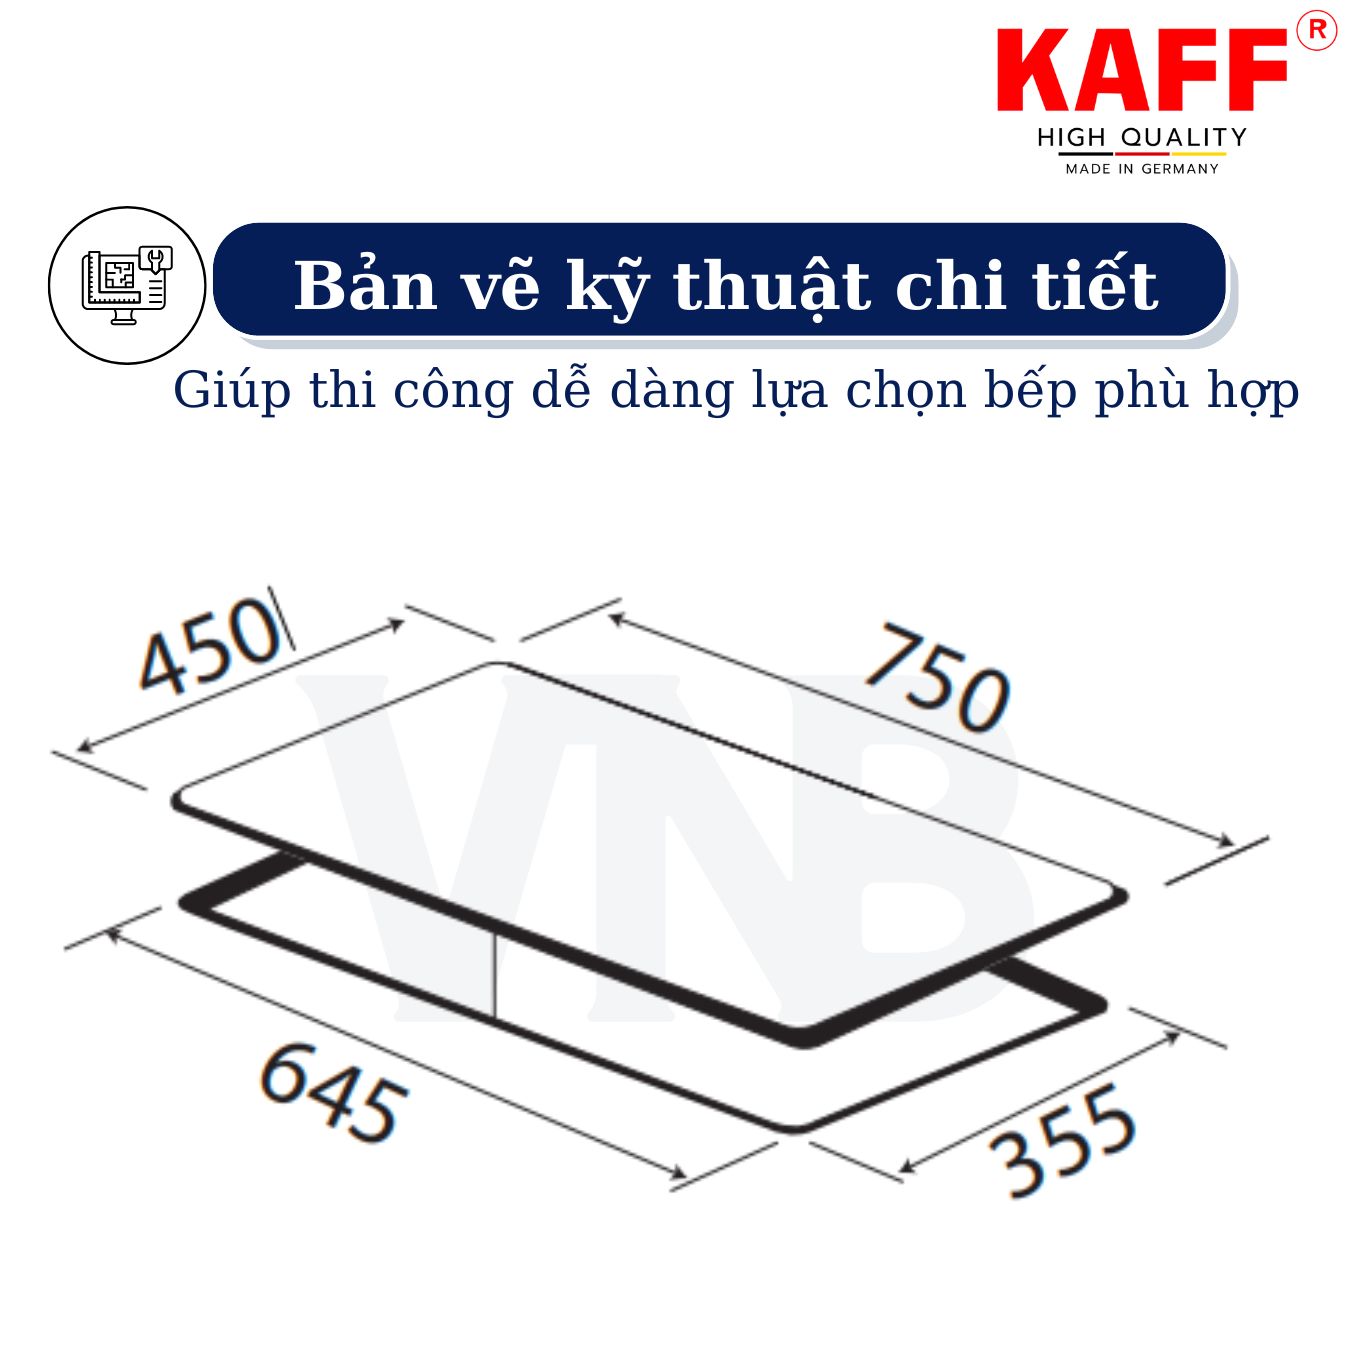 Bộ Bếp ga âm KAFF KF- 608I bao gồm: Bếp ga + chảo chống dính cao cấp + bộ van ga - Hàng chính hãng